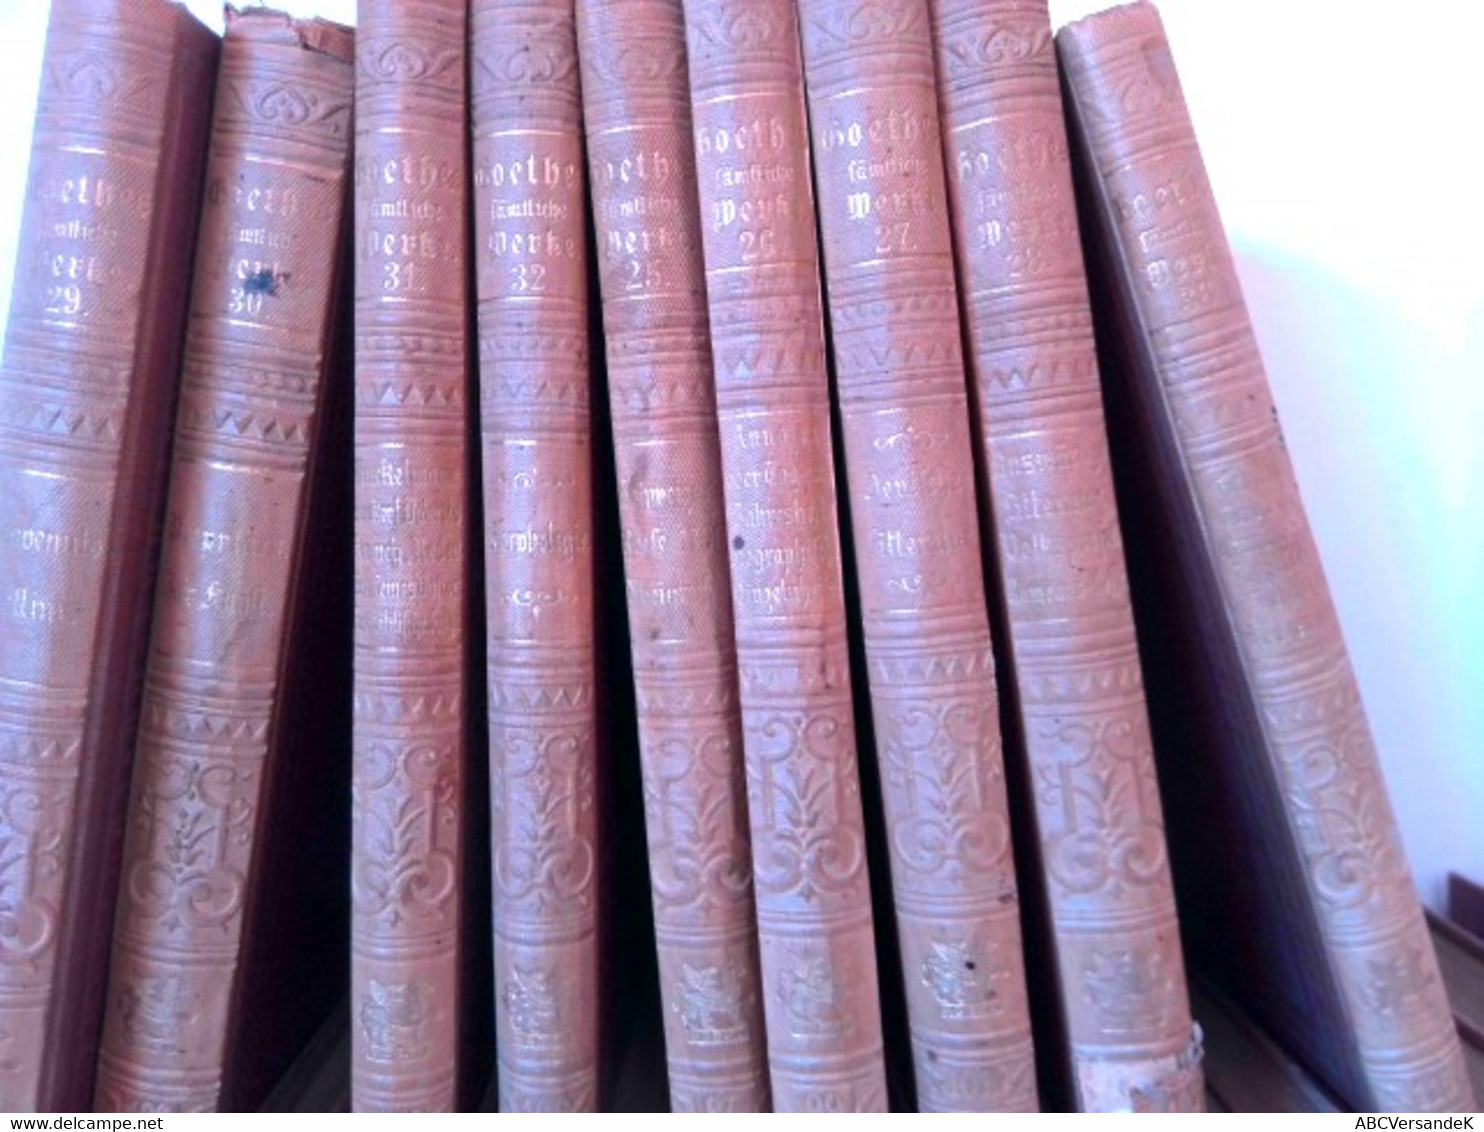 Konvolut Bestehend Aus 36 Bänden Zum Thema: Goethes Sämtliche Werke Aus Der  Cottasche Bibliothek Der Weltlite - Auteurs All.